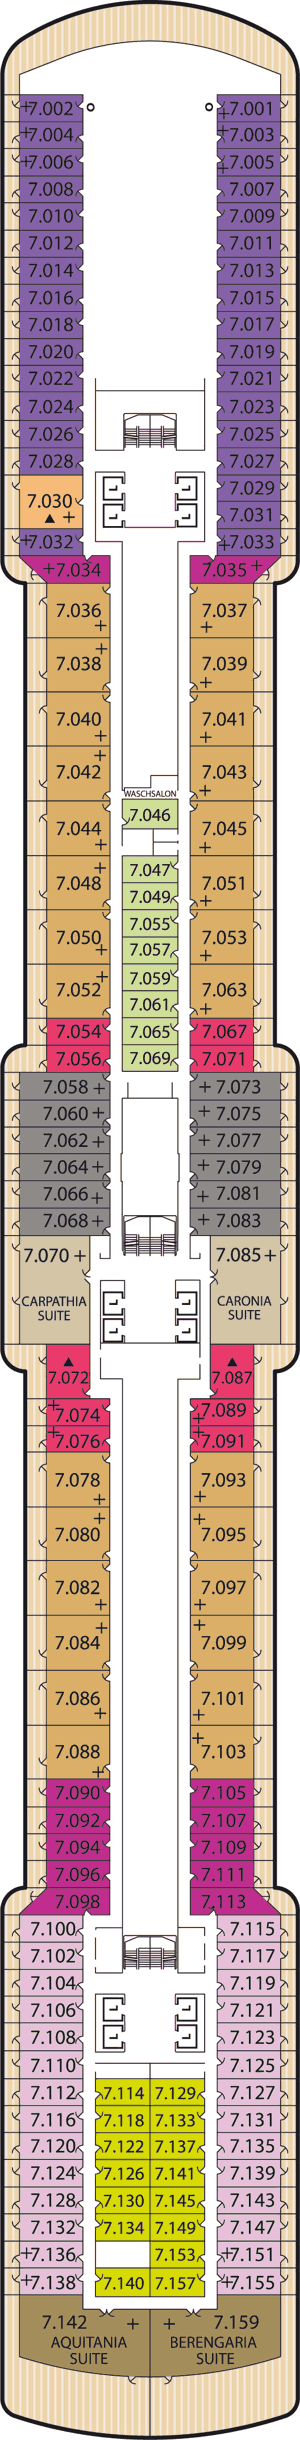 Queen Victoria - Decksplan Deck 7